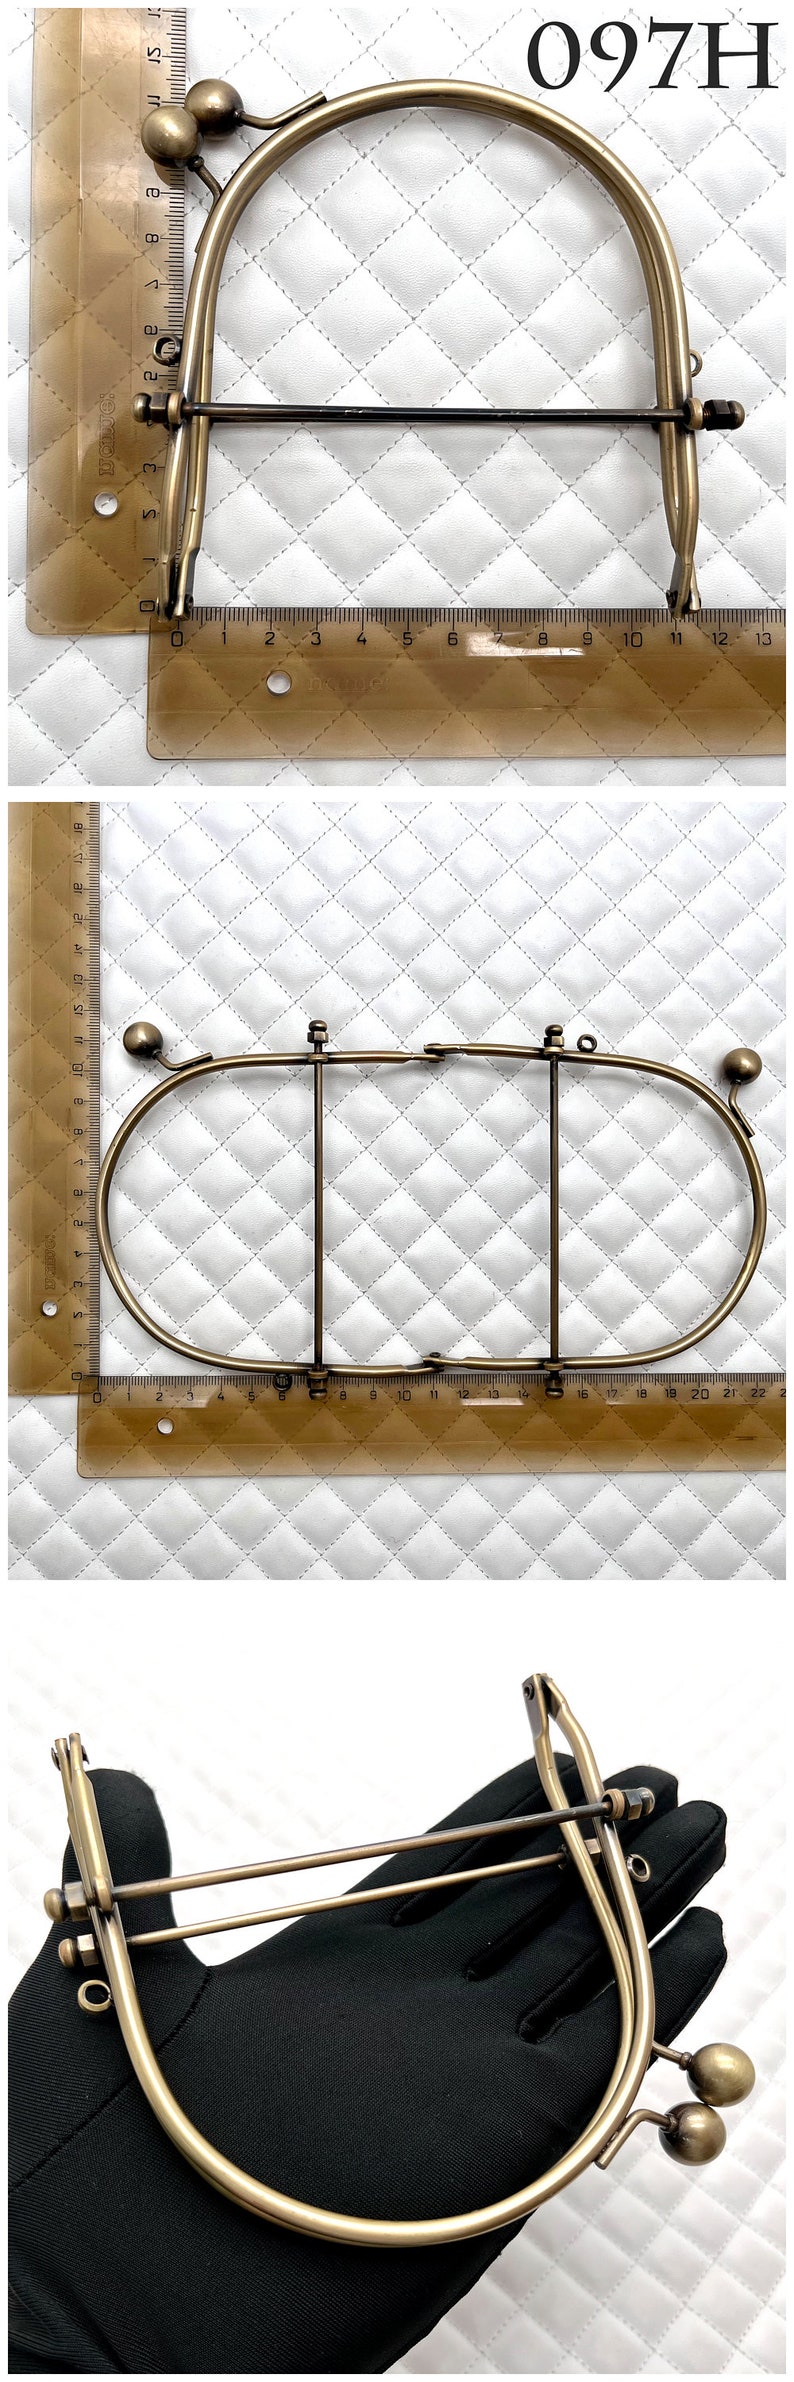 Monedero de alambre de hierro de 4 tamaños, marco de embrague para bolso, cierre de beso, antibronce, para reemplazo de fabricación de bolsos 097H 4" x 4 1/2"